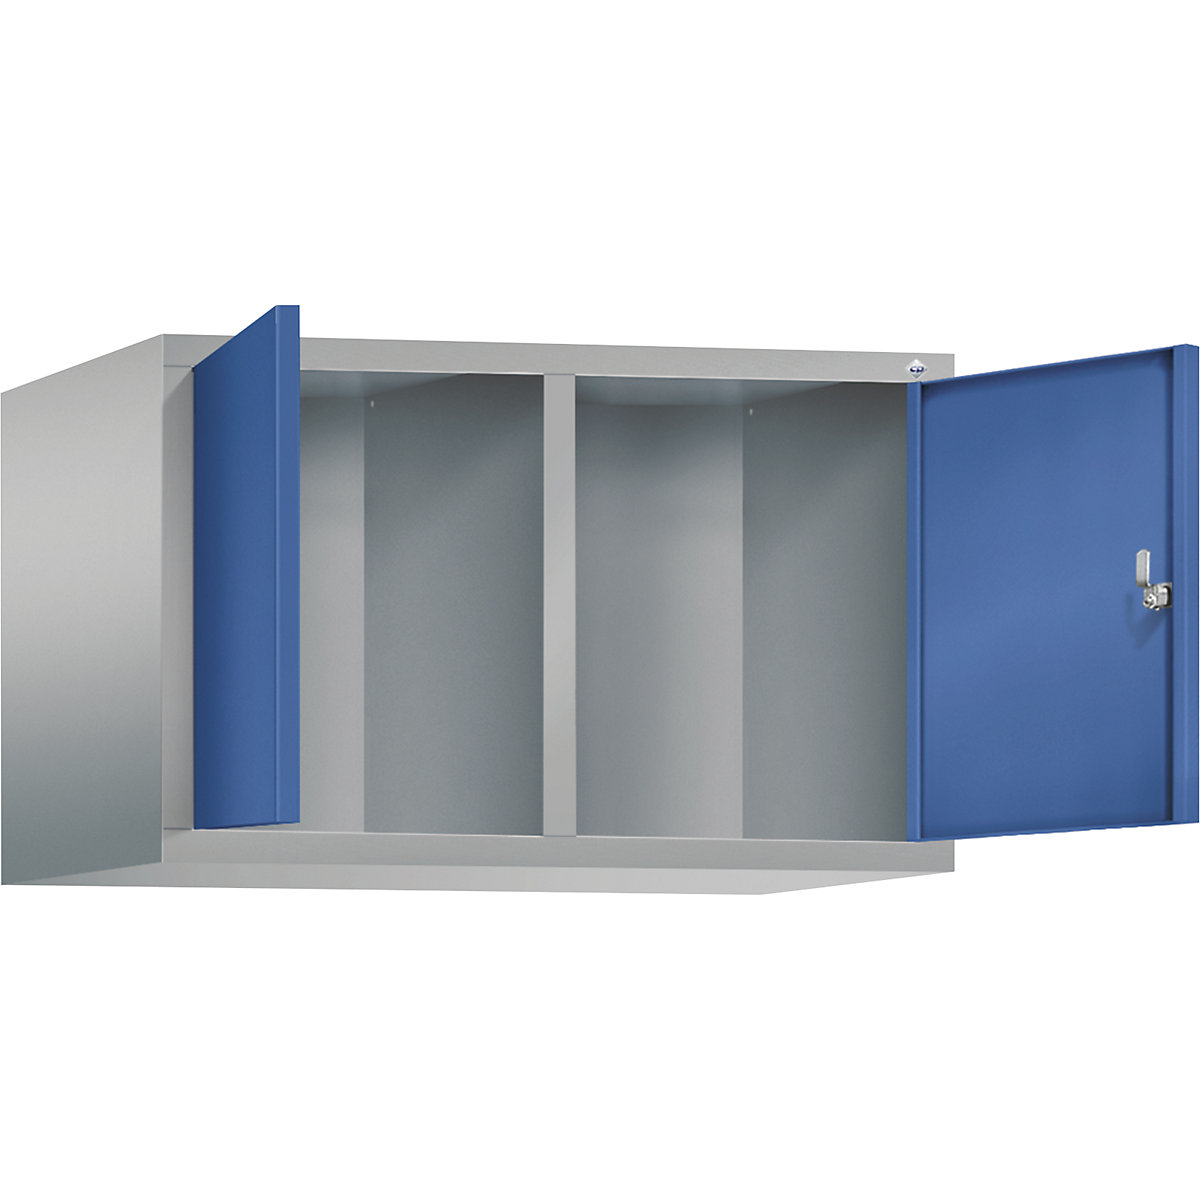 C+P – Dogradni ormar CLASSIC, vrata koja se zatvaraju jedna prema drugima, 2 odjela, širina odjela 400 mm, u aluminij bijeloj / encijan plavoj boji